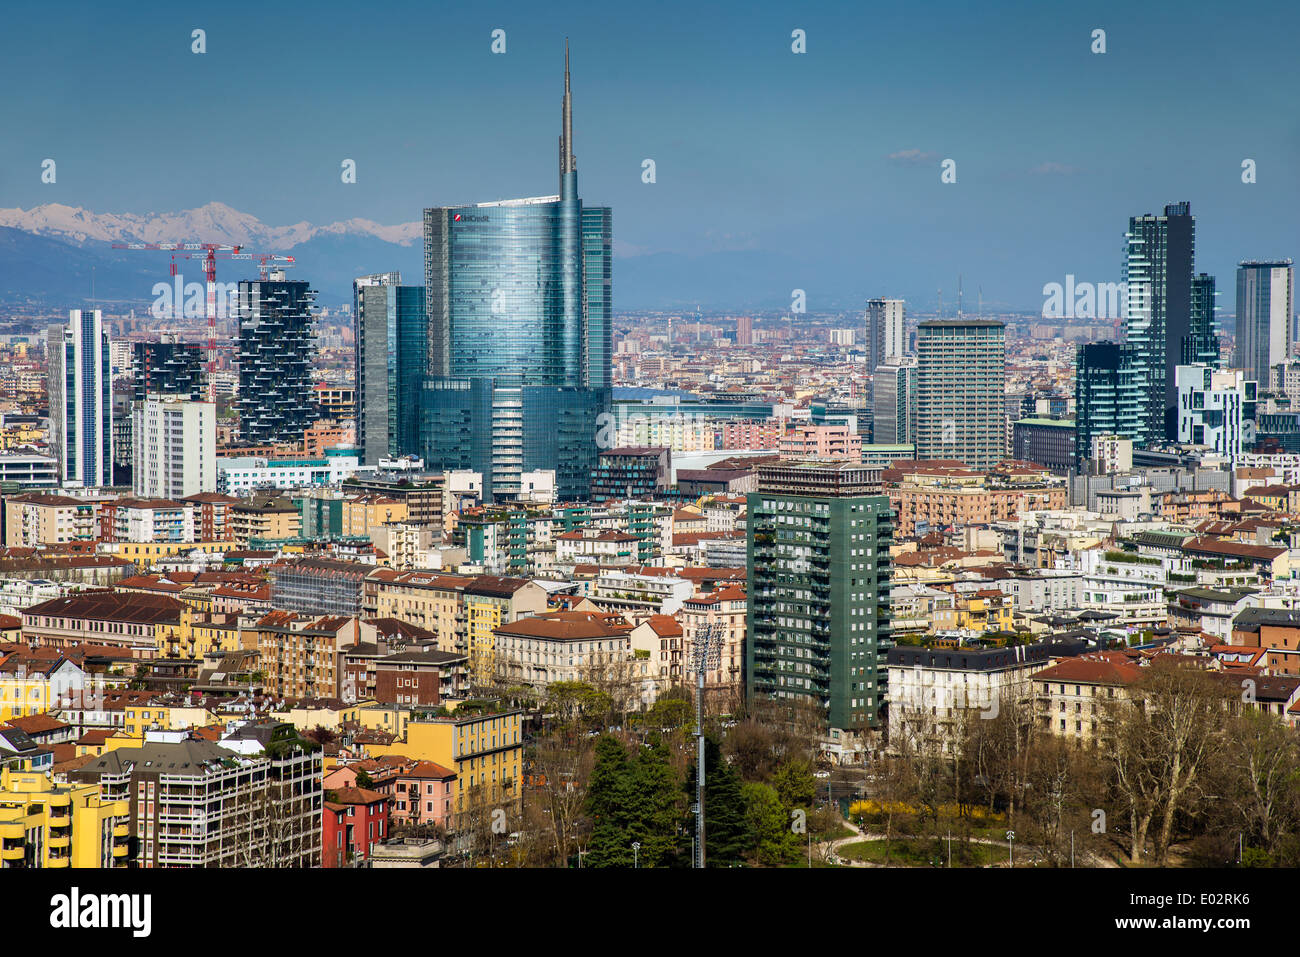 Porta Nuova quartiere finanziario skyline con sullo sfondo le Alpi, Milano, Lombardia, Italia Foto Stock